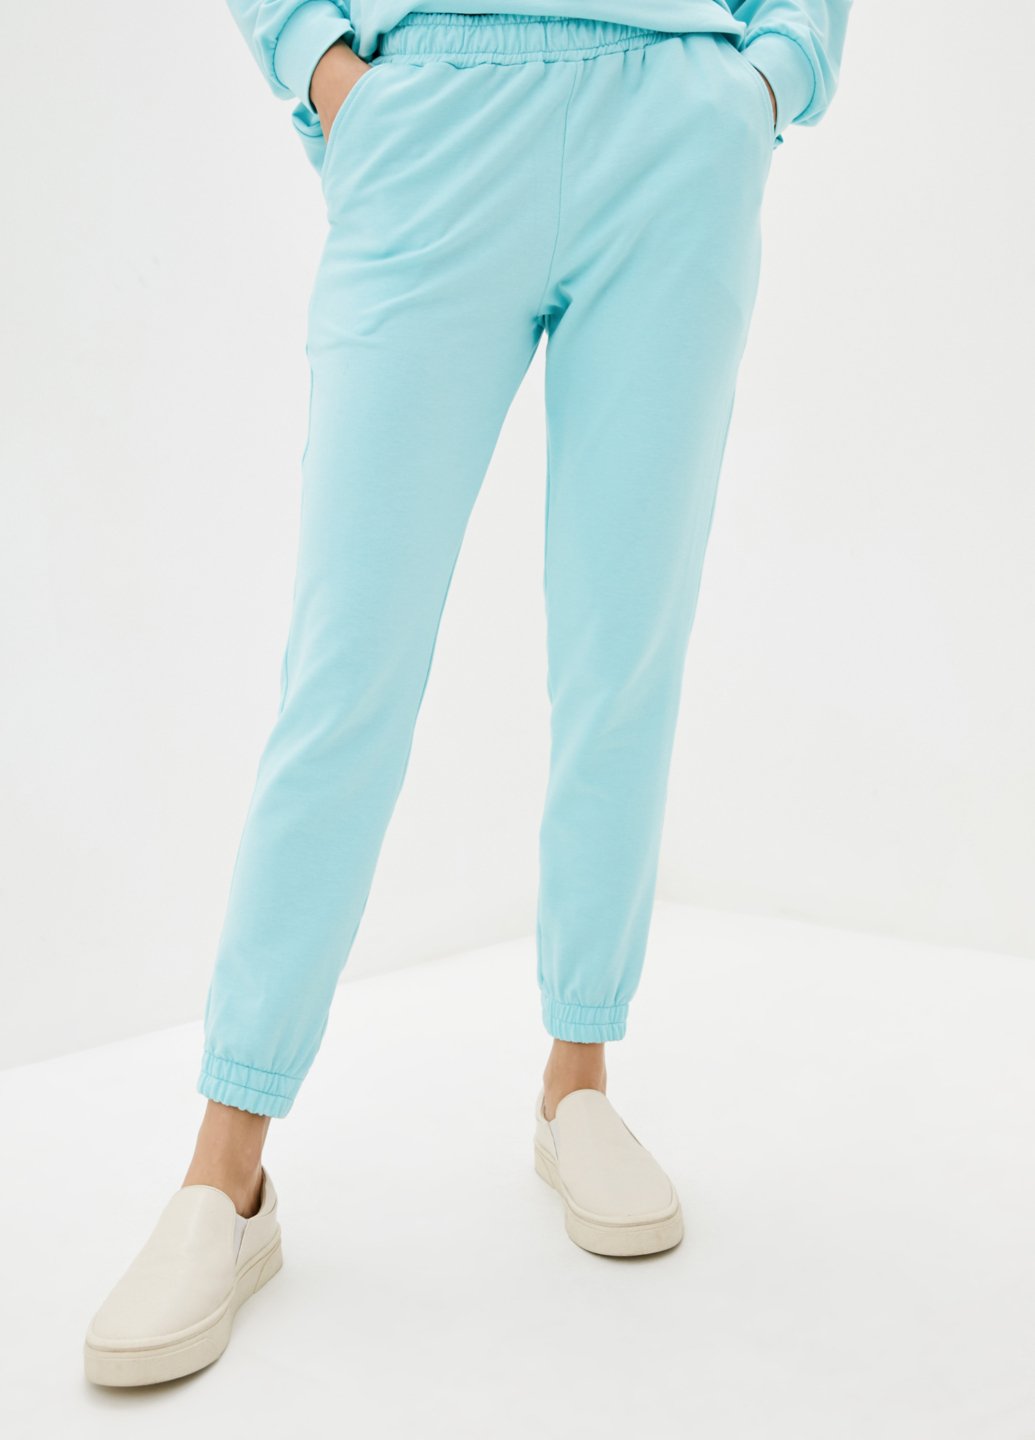 Купить Спортивные штаны женские Merlini Латина 600000015 - Голубой, 42-44 в интернет-магазине